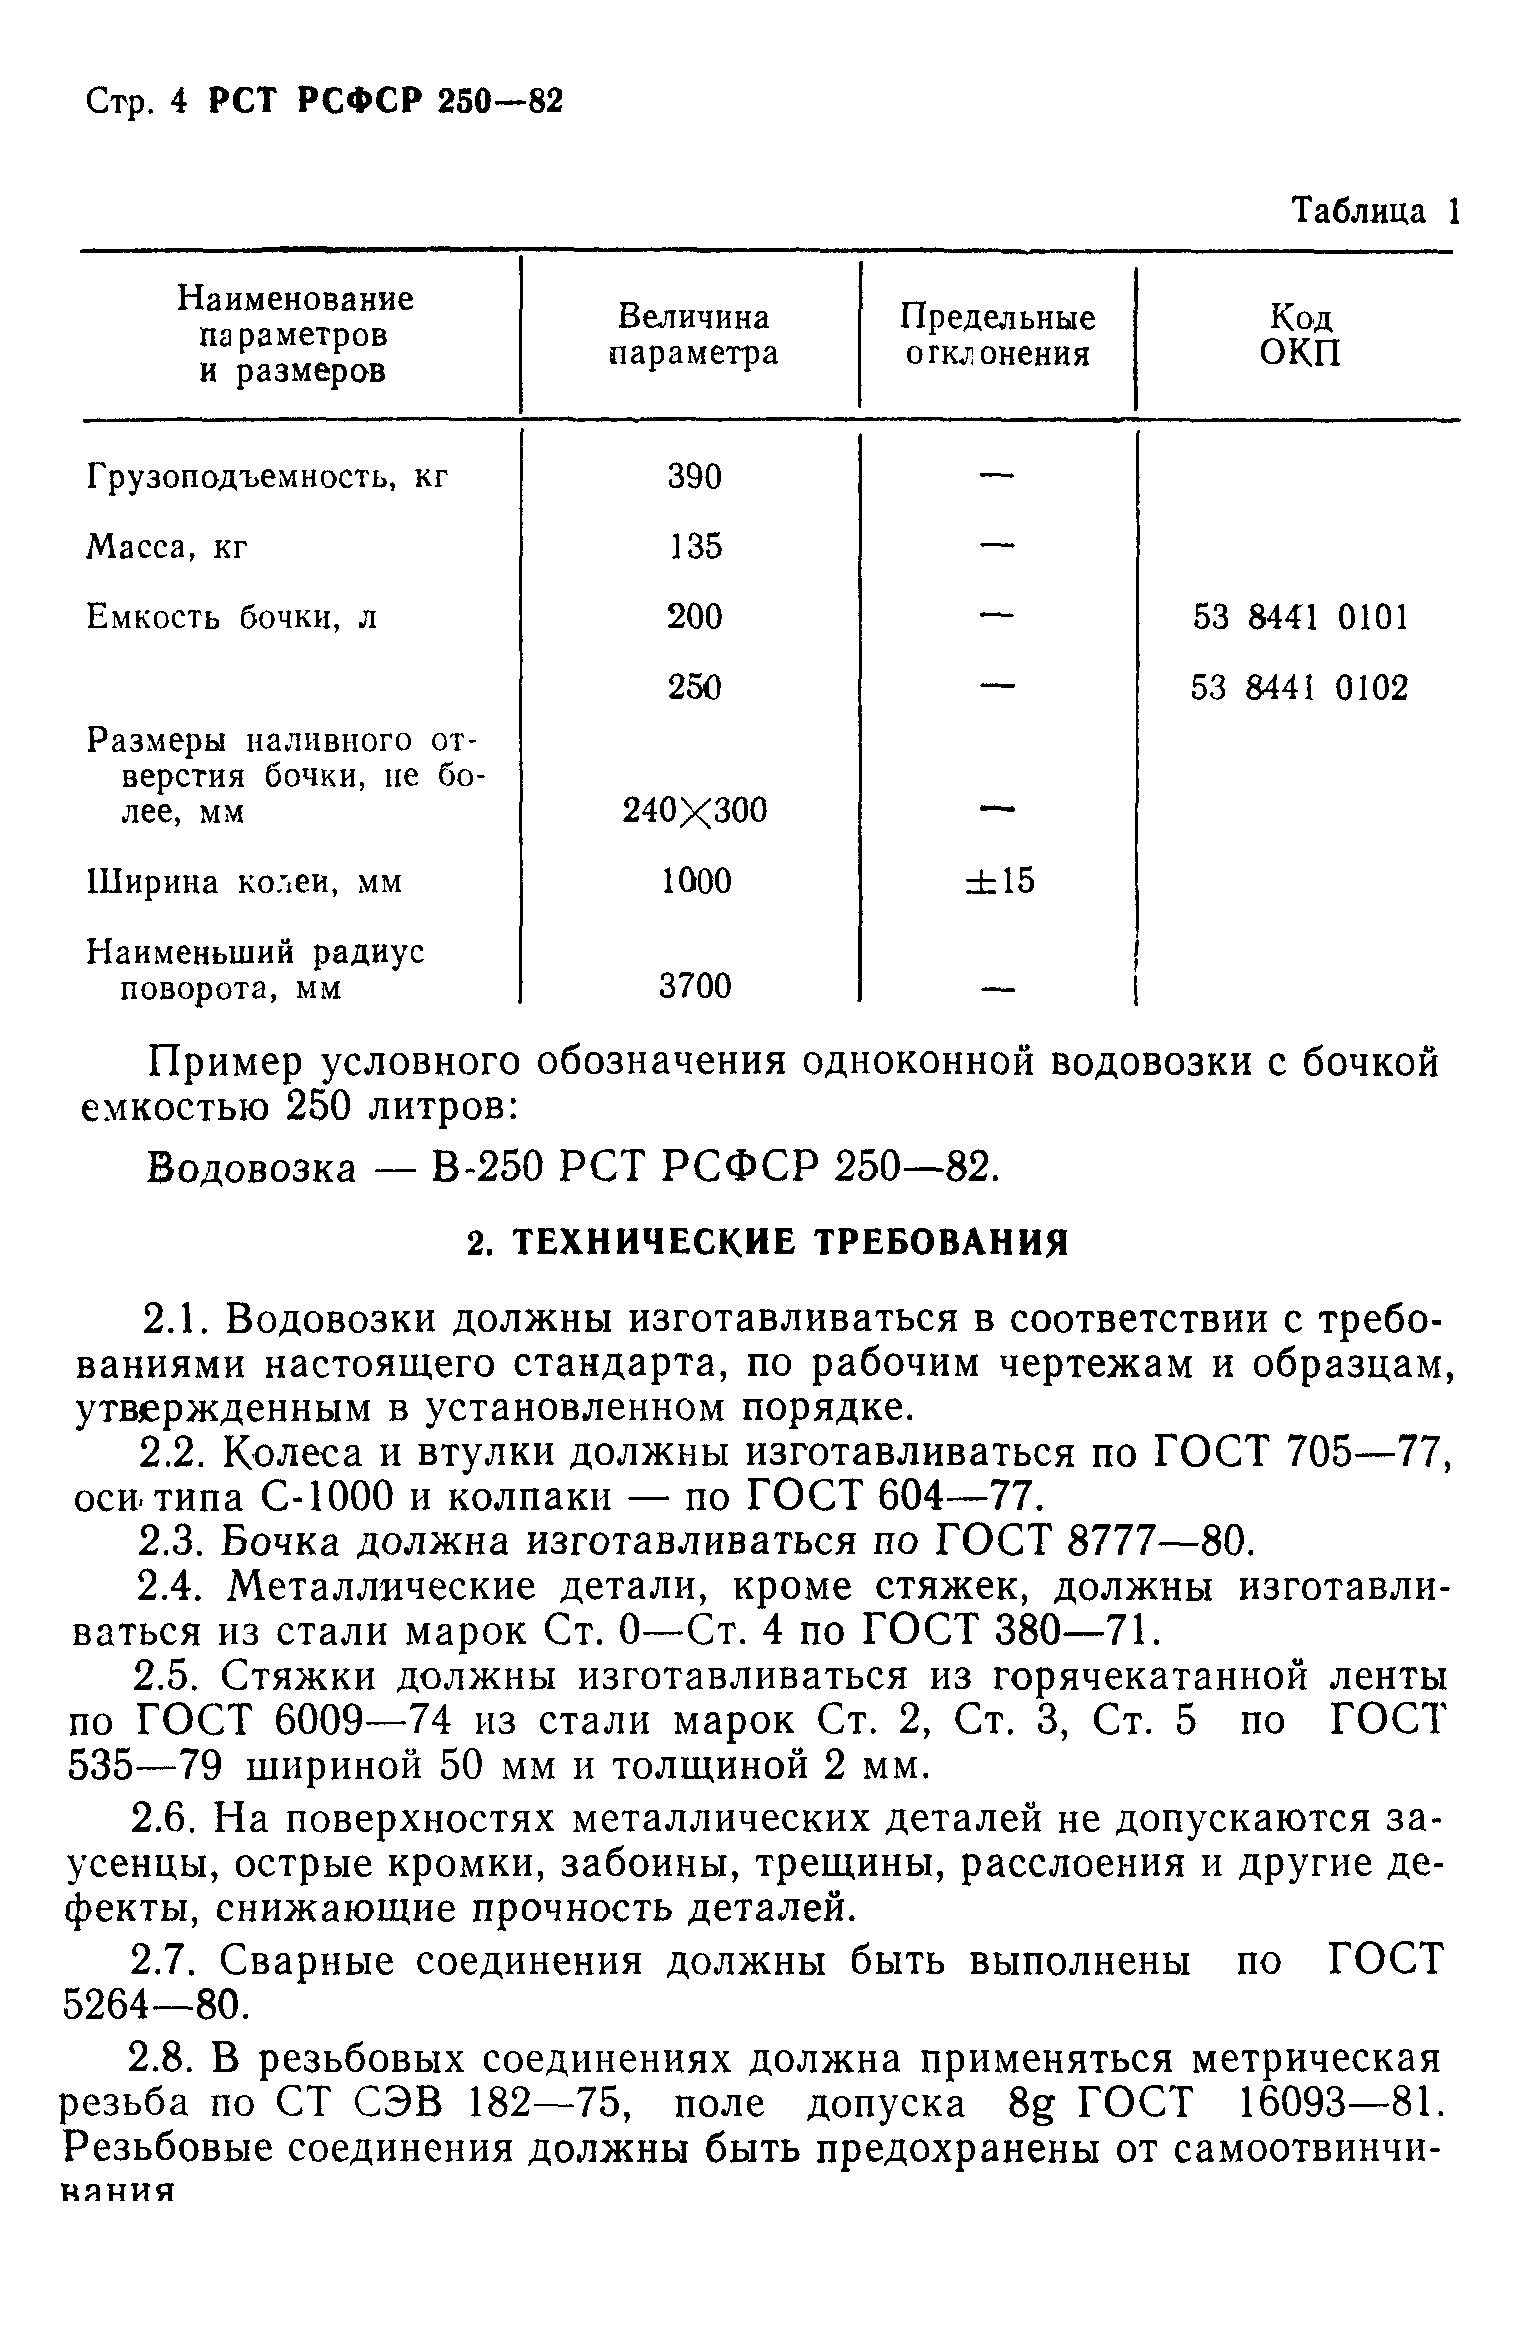 РСТ РСФСР 250-82